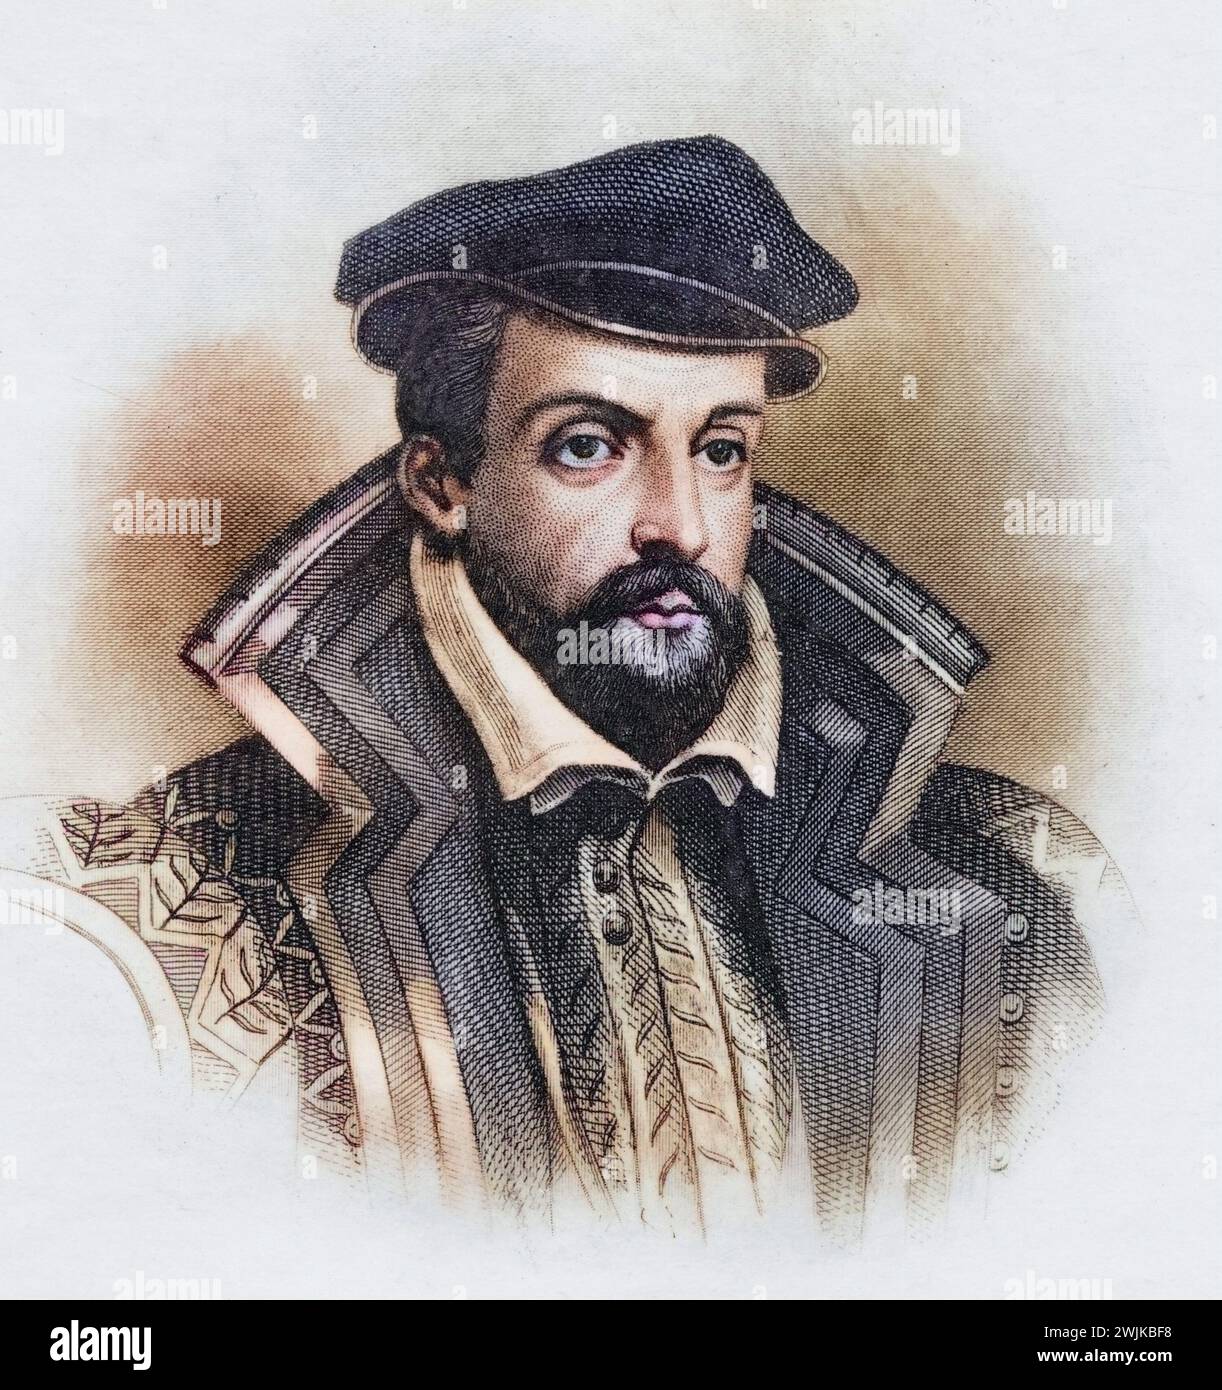 Gaspard de Coligny, 1519-1572. Admiral von Frankreich und protestantischer Führer, Historisch, digital restaurierte Reproduktion von einer Vorlage aus dem 19. Jahrhundert, Record date not stated Stock Photo